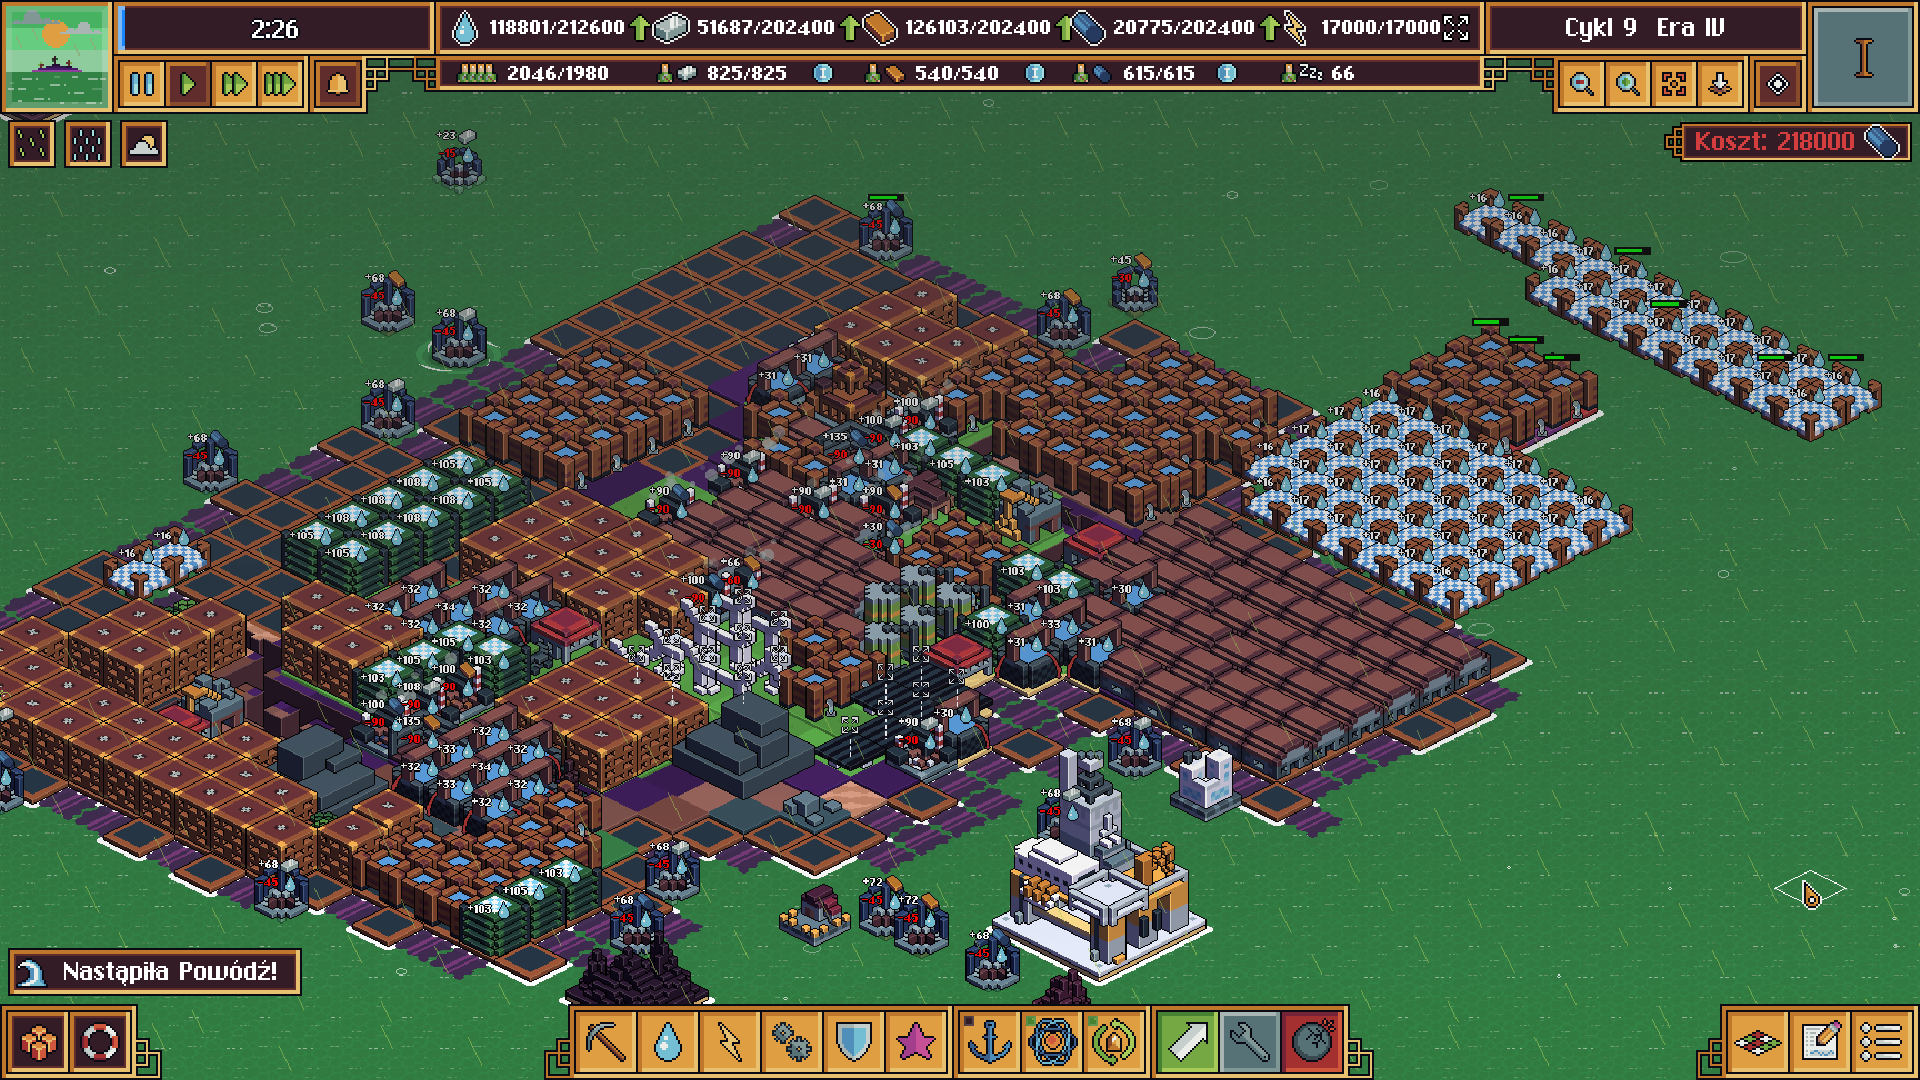 Zrzut ekranu z gry. Wyspa z wieloma budynkami, otoczona zielonym oceanem.